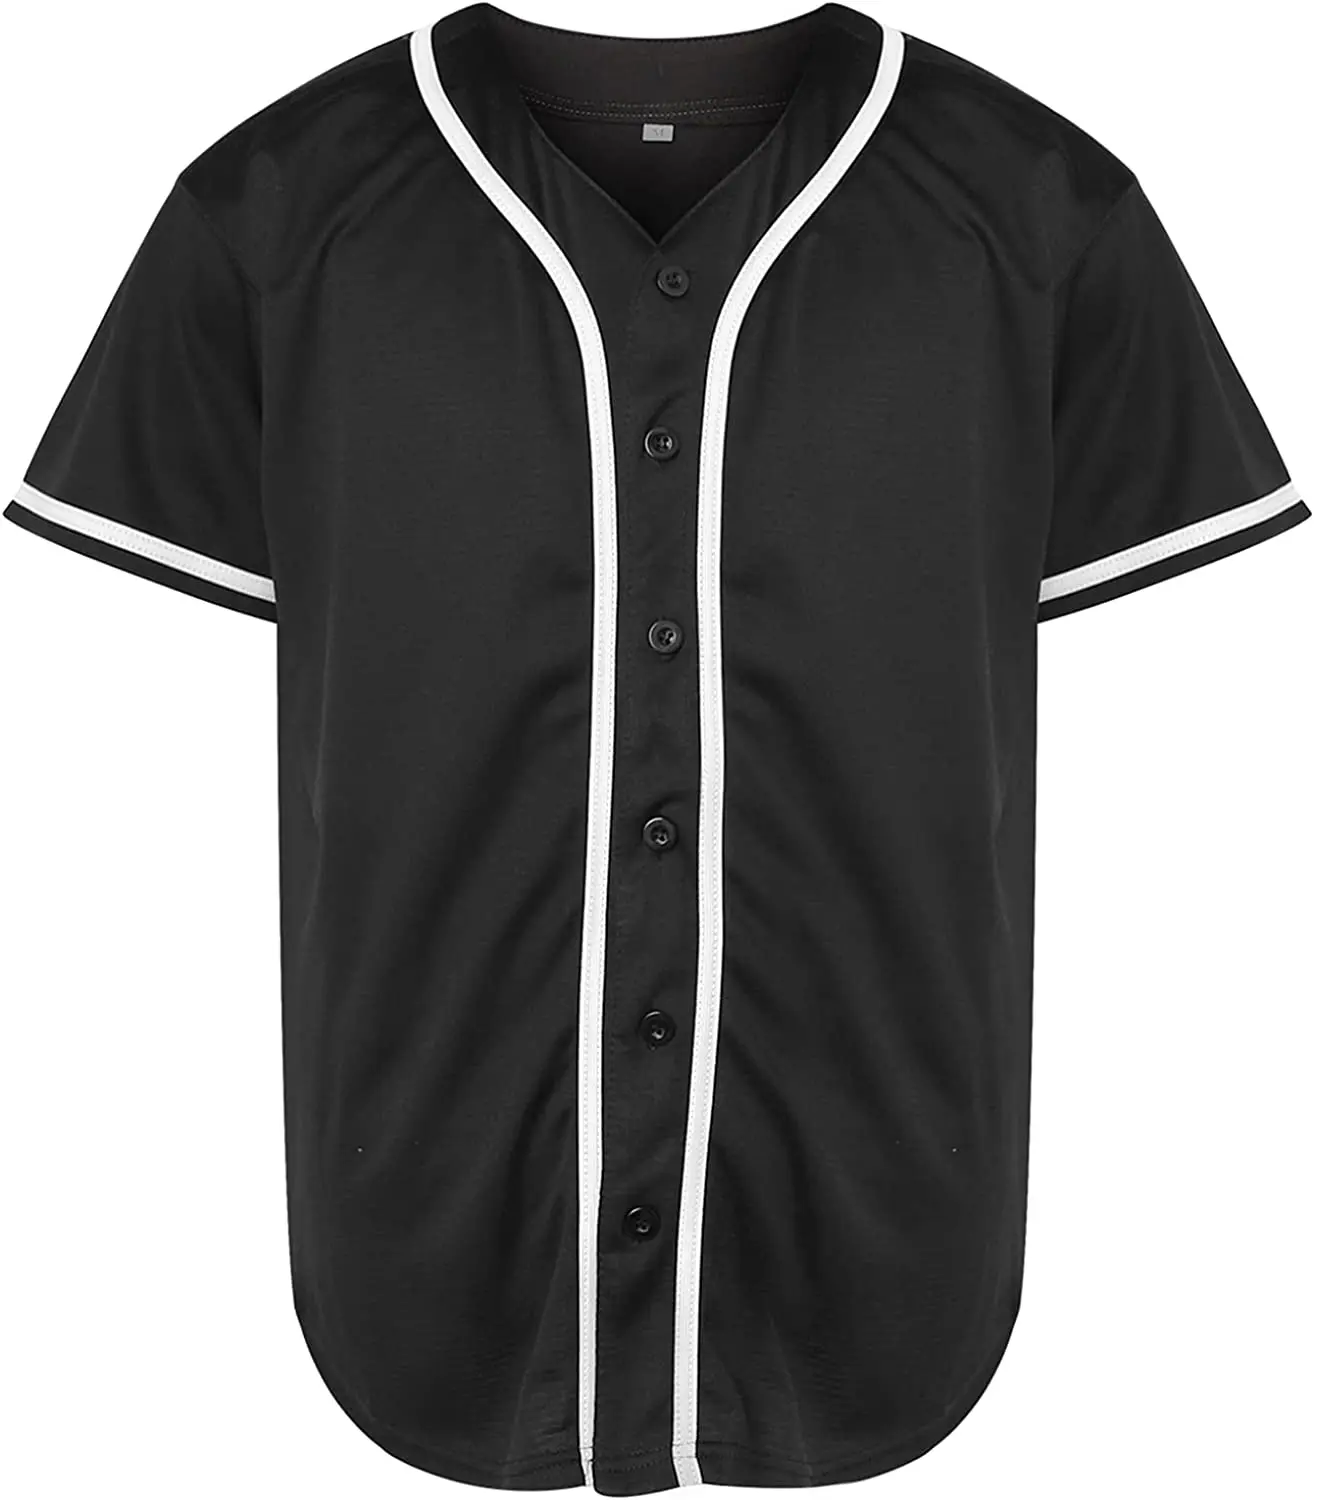 Wholesale Blank Plain Hip Hop Hipster Baseball Jersey Button Down Shirts  Sports Uniforms Men Women Jersey From m.